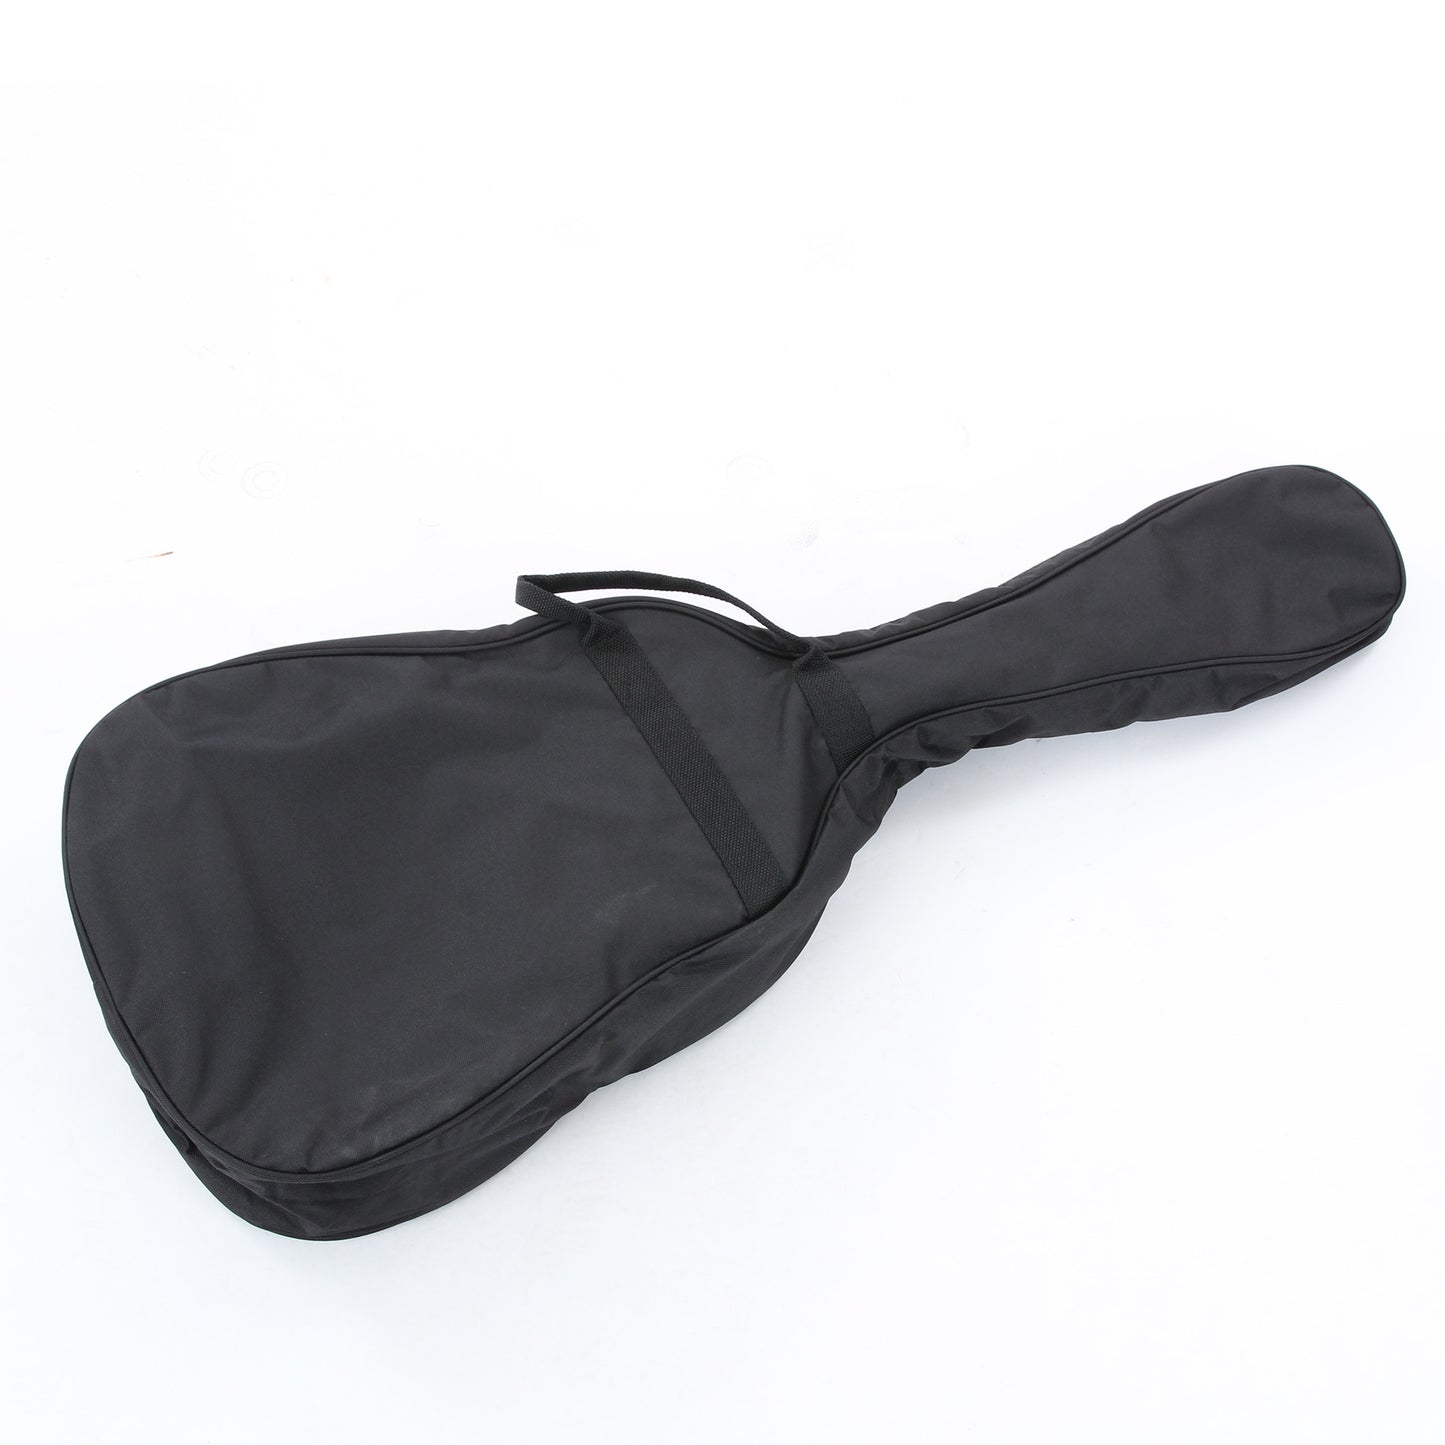 Gig bag for Yamaha JR1 3/4 Size Acoustic Guitar